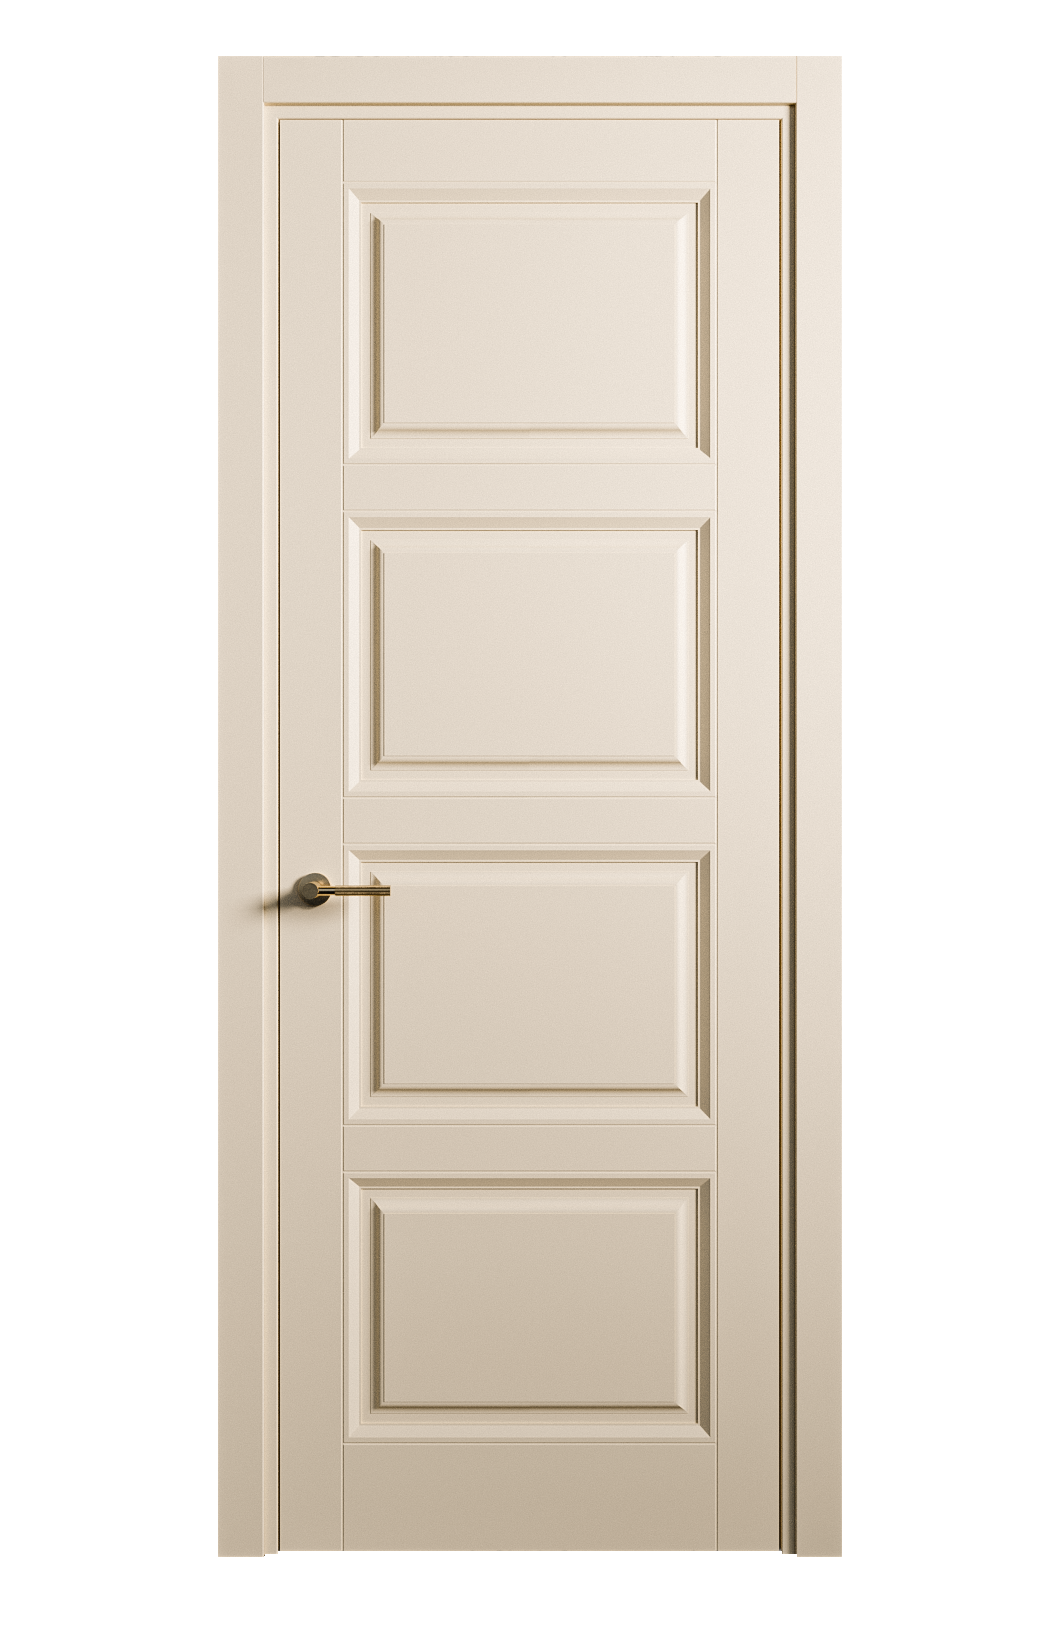 Межкомнатная дверь Venezia-4 глухая эмаль ral 1015 25844